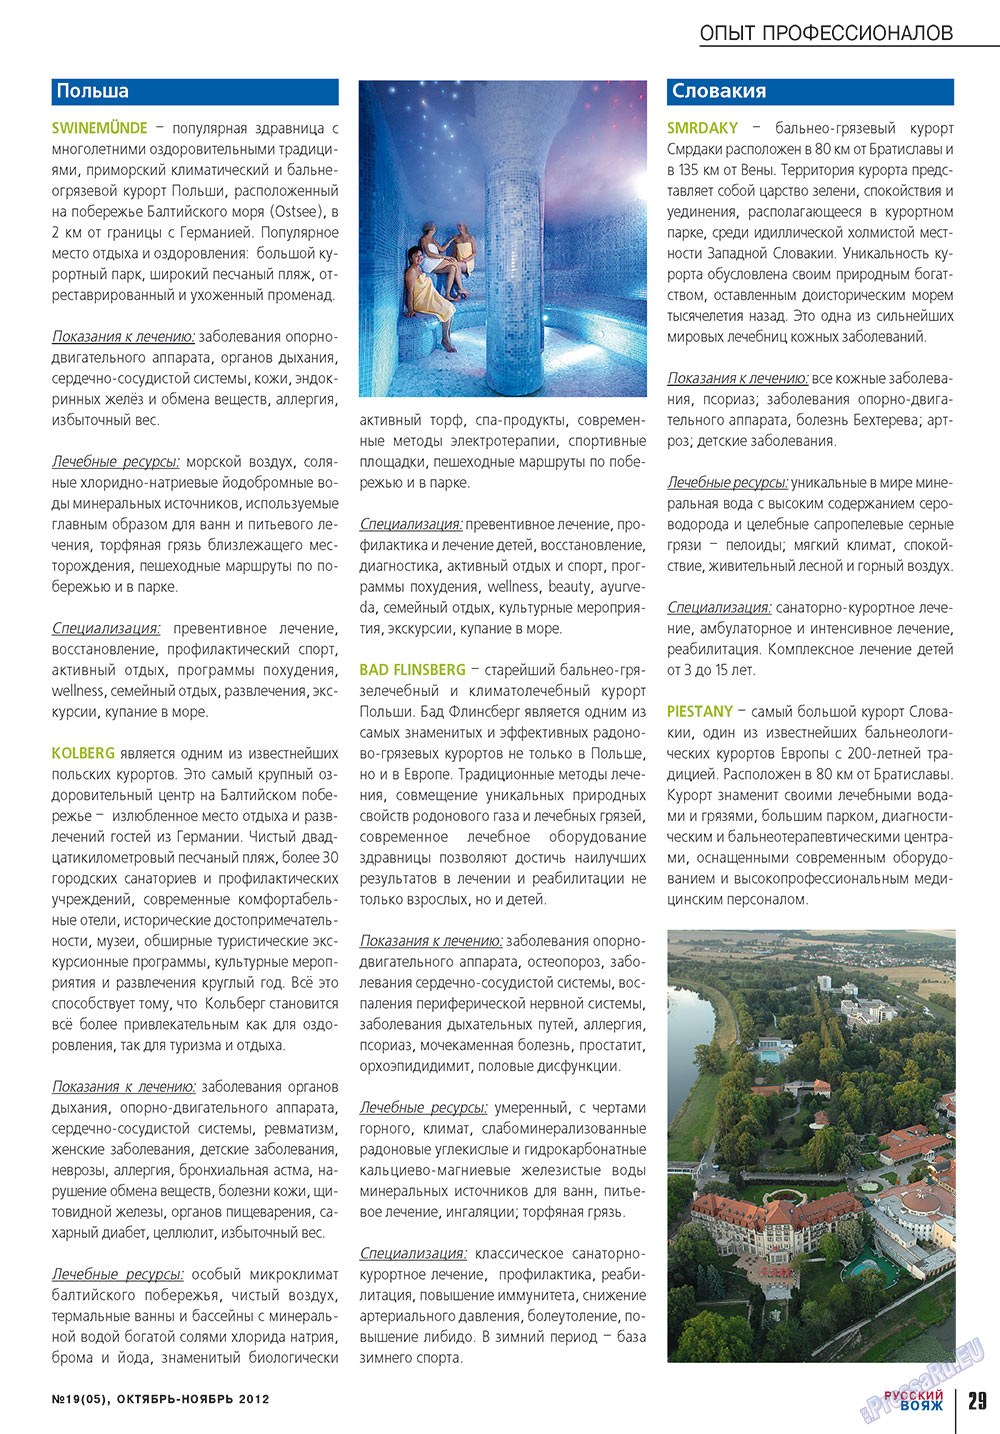 Русский вояж (журнал). 2012 год, номер 19, стр. 29